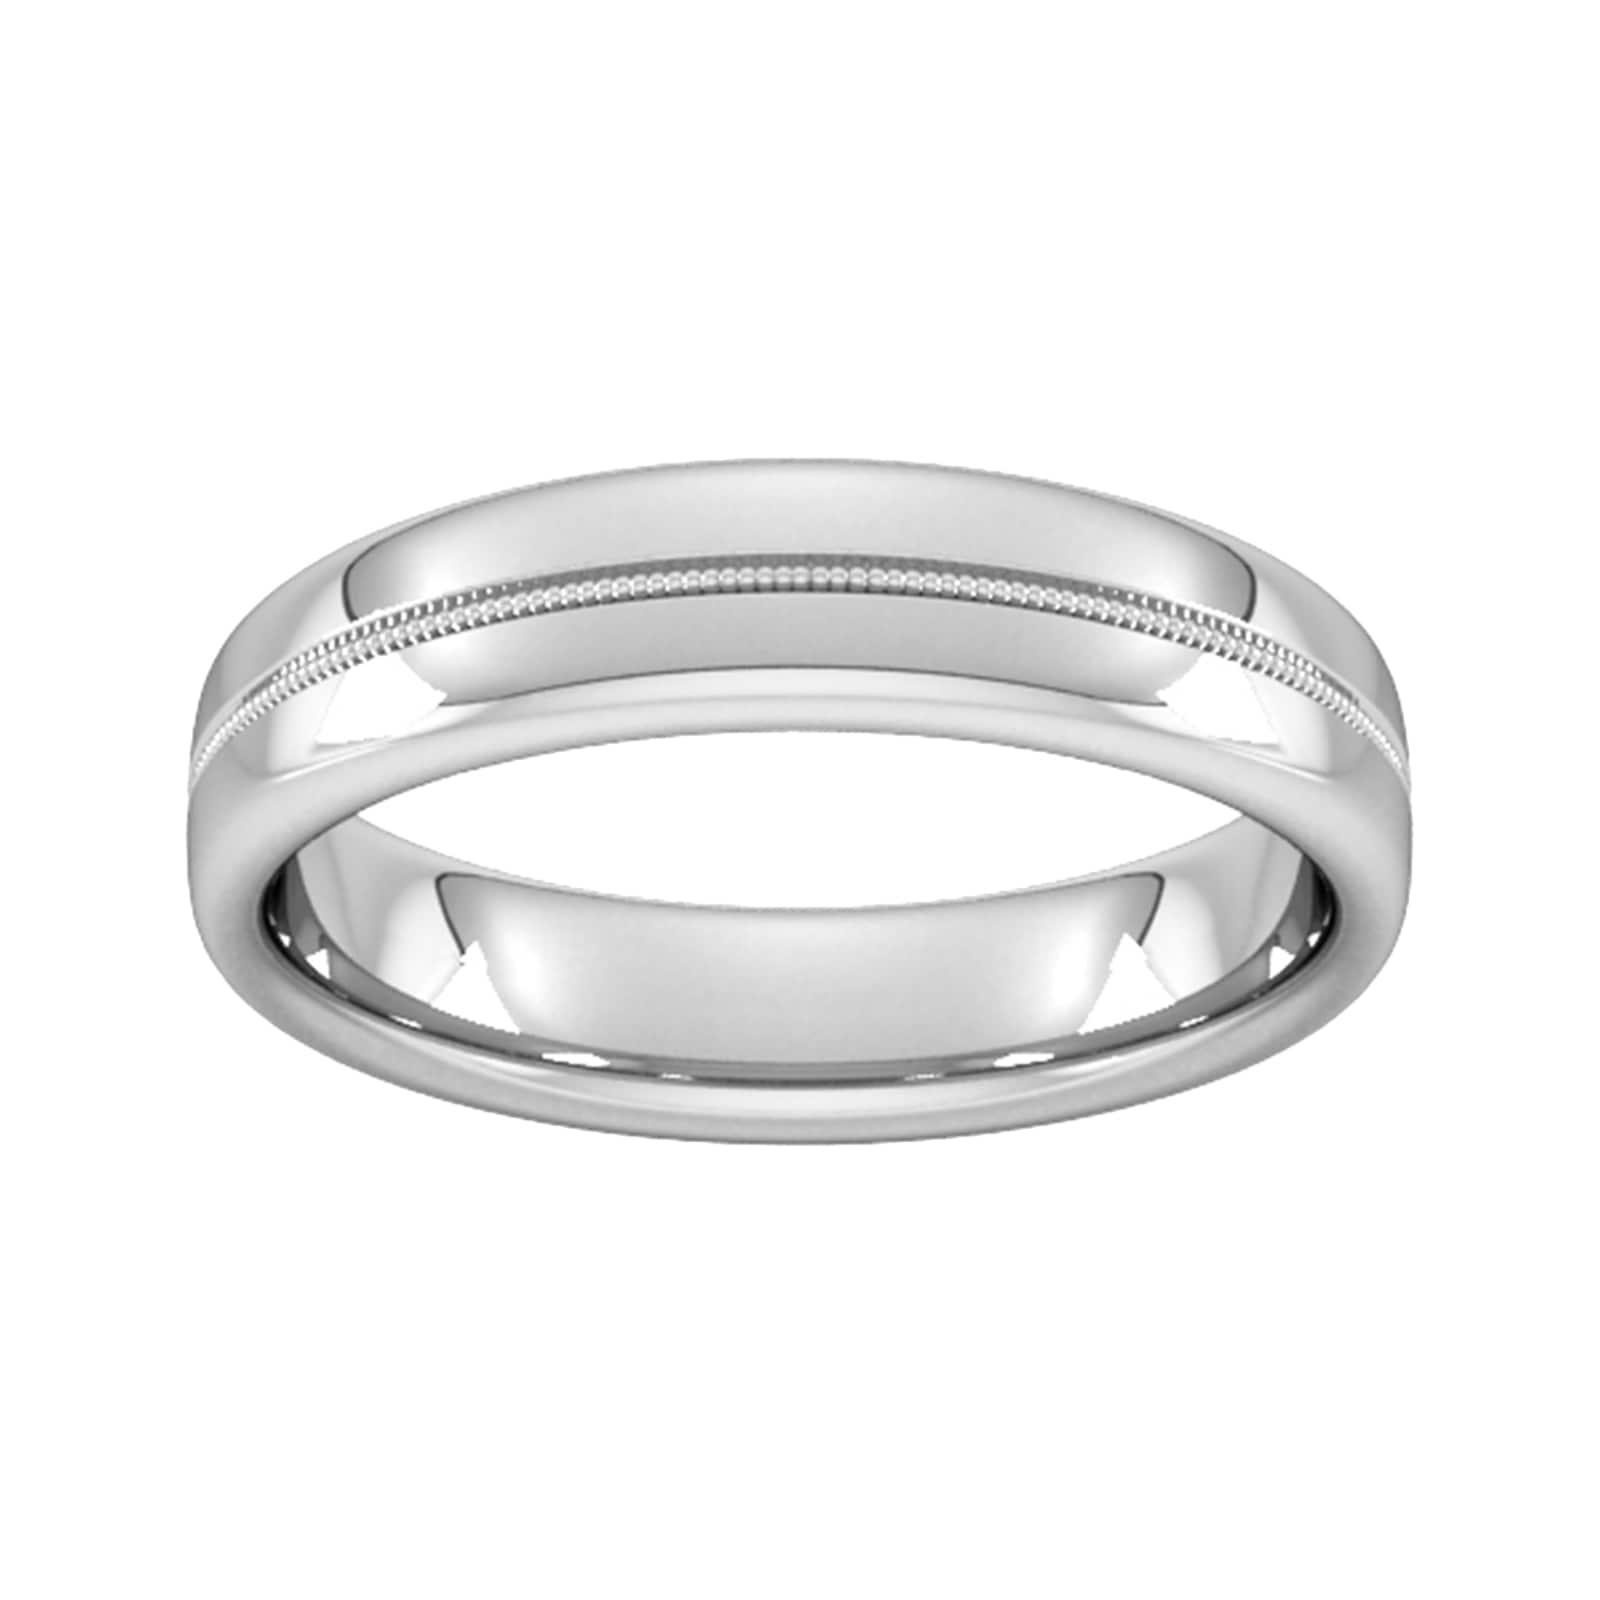 5mm Slight Court Standard Milgrain Centre Wedding Ring In 9 Carat White Gold - Ring Size R